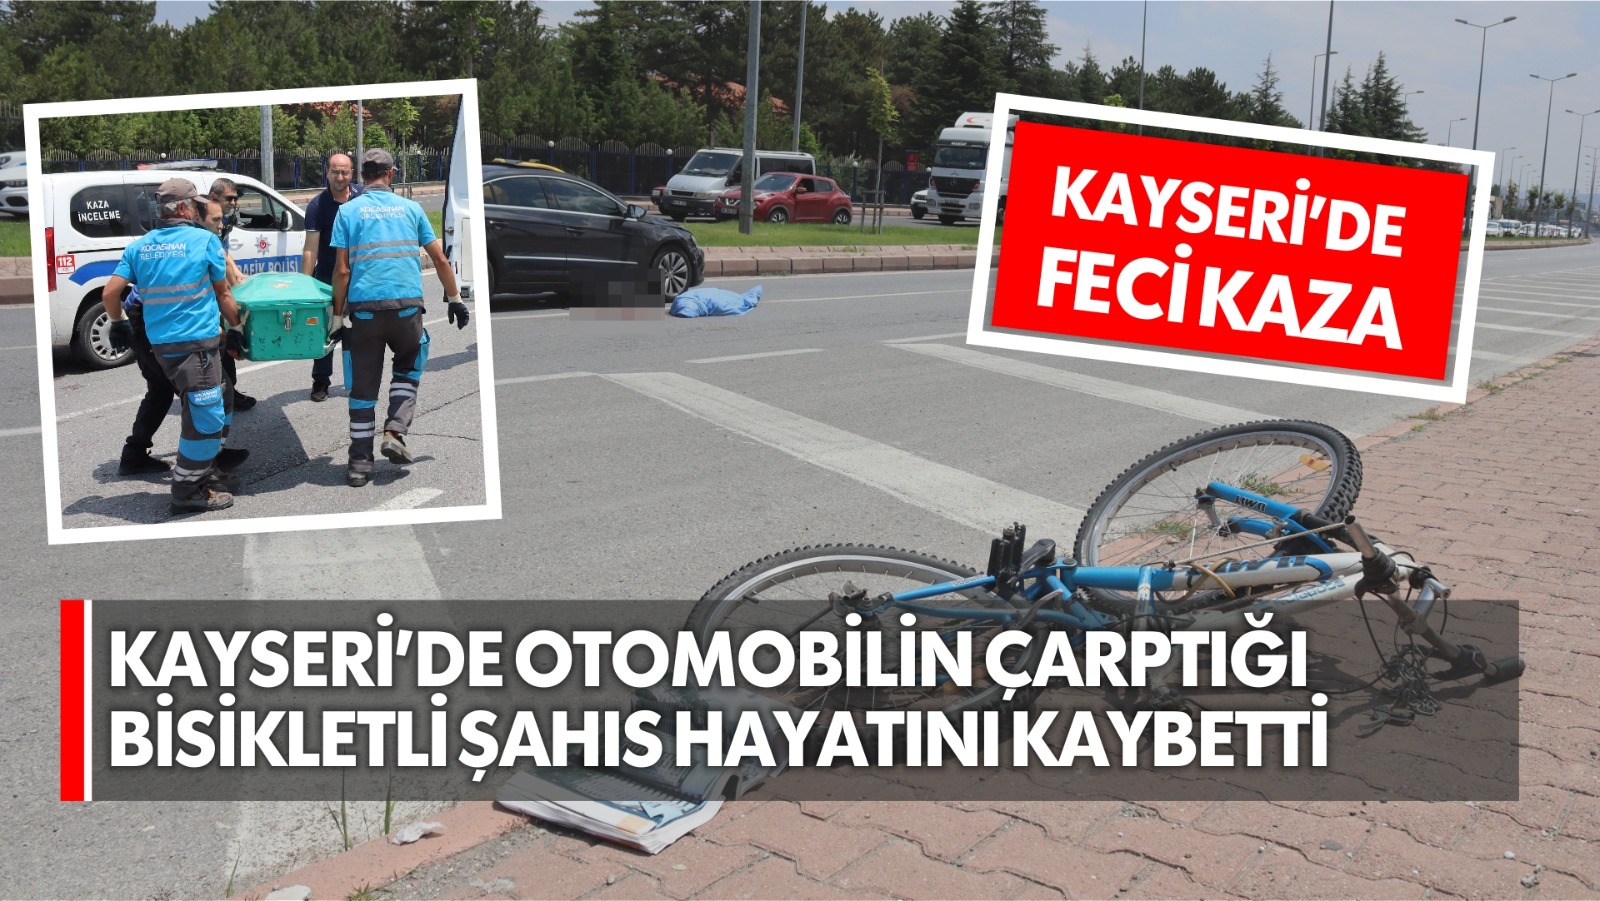 Kayseri’de feci kaza, otomobil çarptığı bisikletliyi 50 metre sürükledi